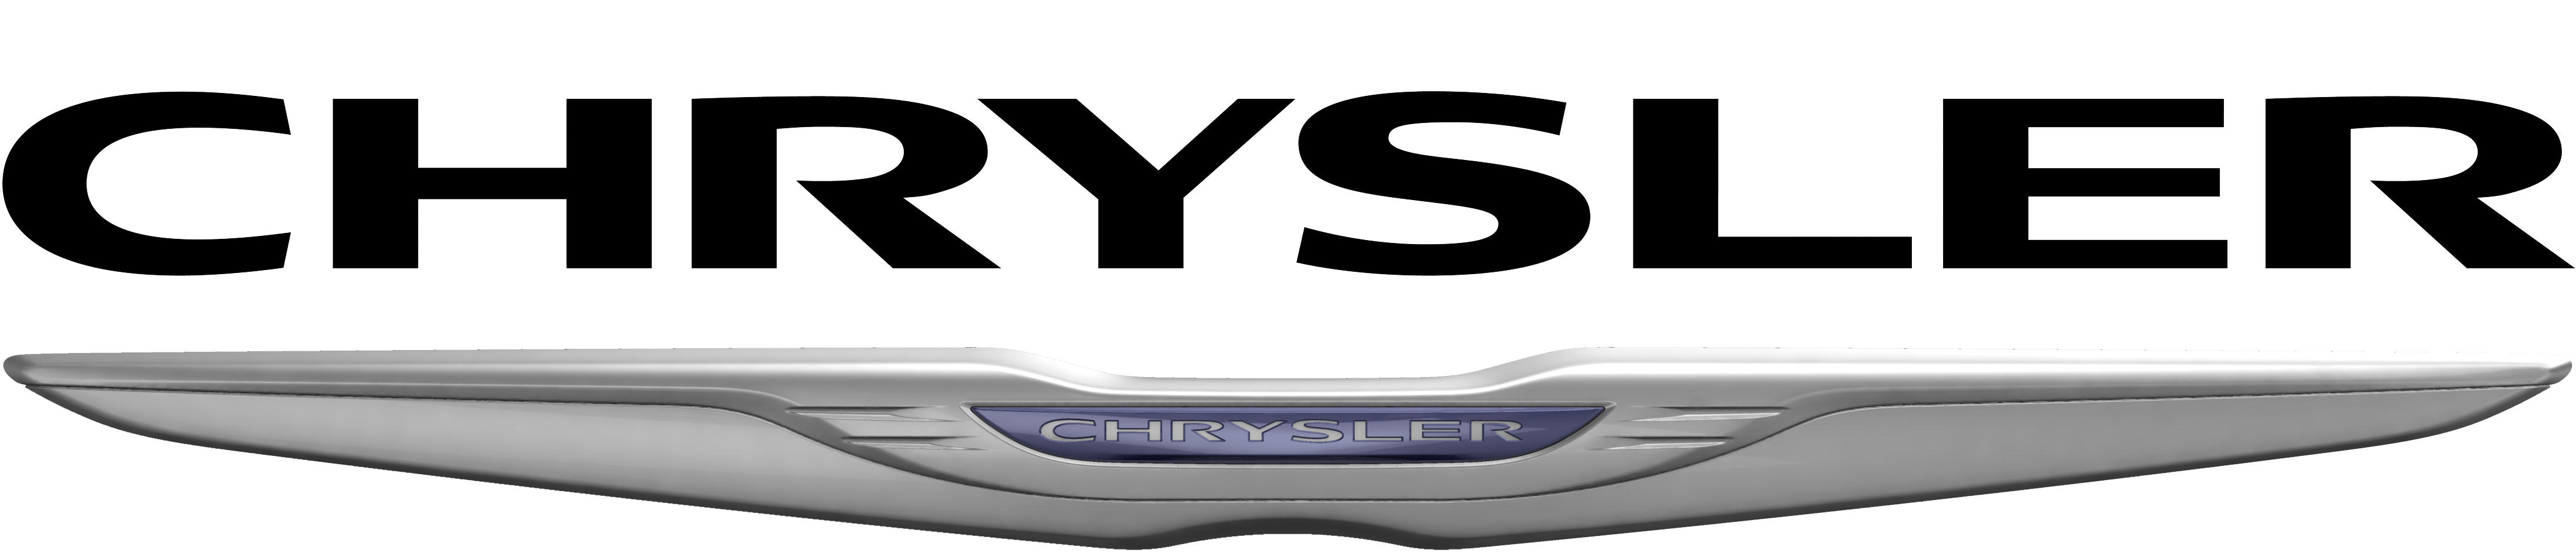 6-chrysler-logo-vector-images-new-chrysler-logo-chrysler-logo-and